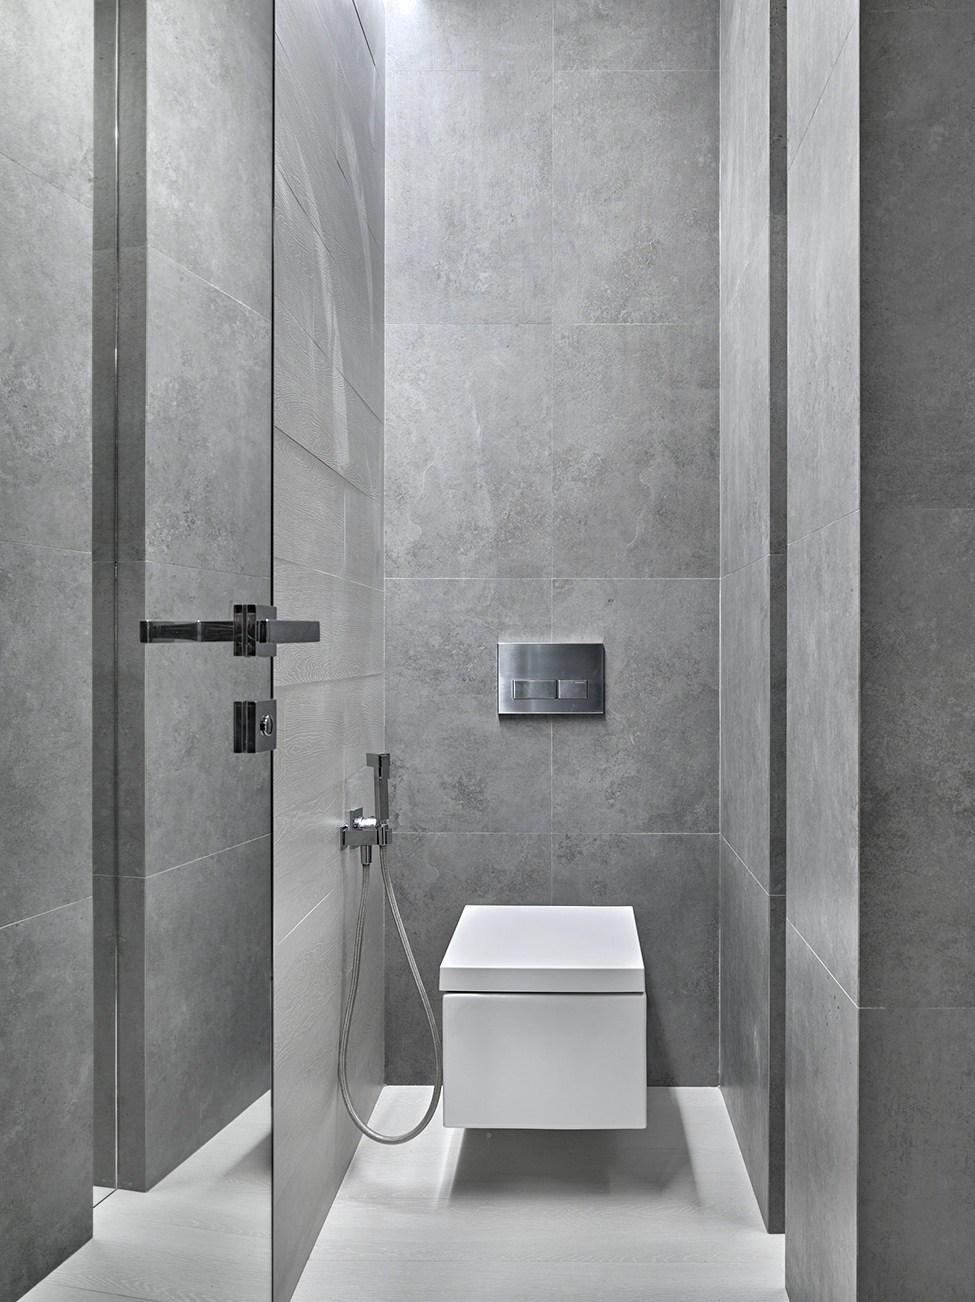 Любителям строгих геометрических линий дизайн туалета должен понравиться